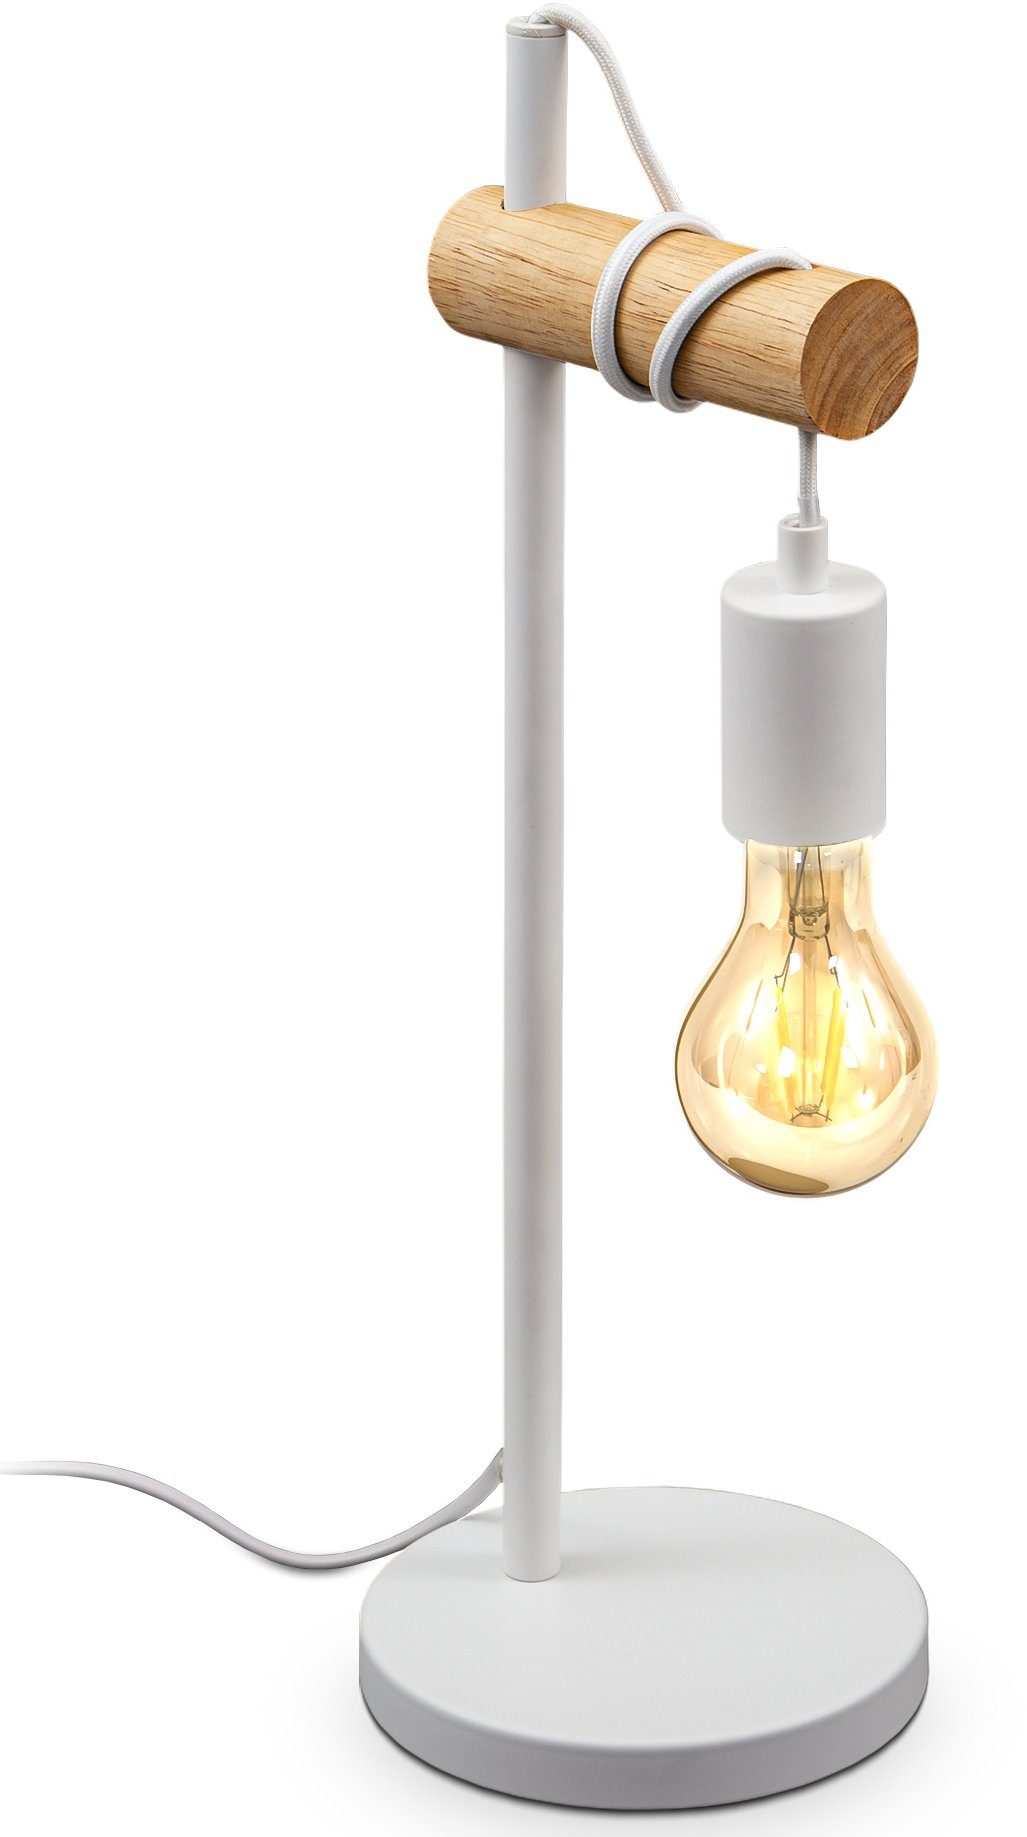 B.K.Licht Tafellamp BK_TL1358 Tischlampe, Vintage, Industrial Design, Retro Lampe